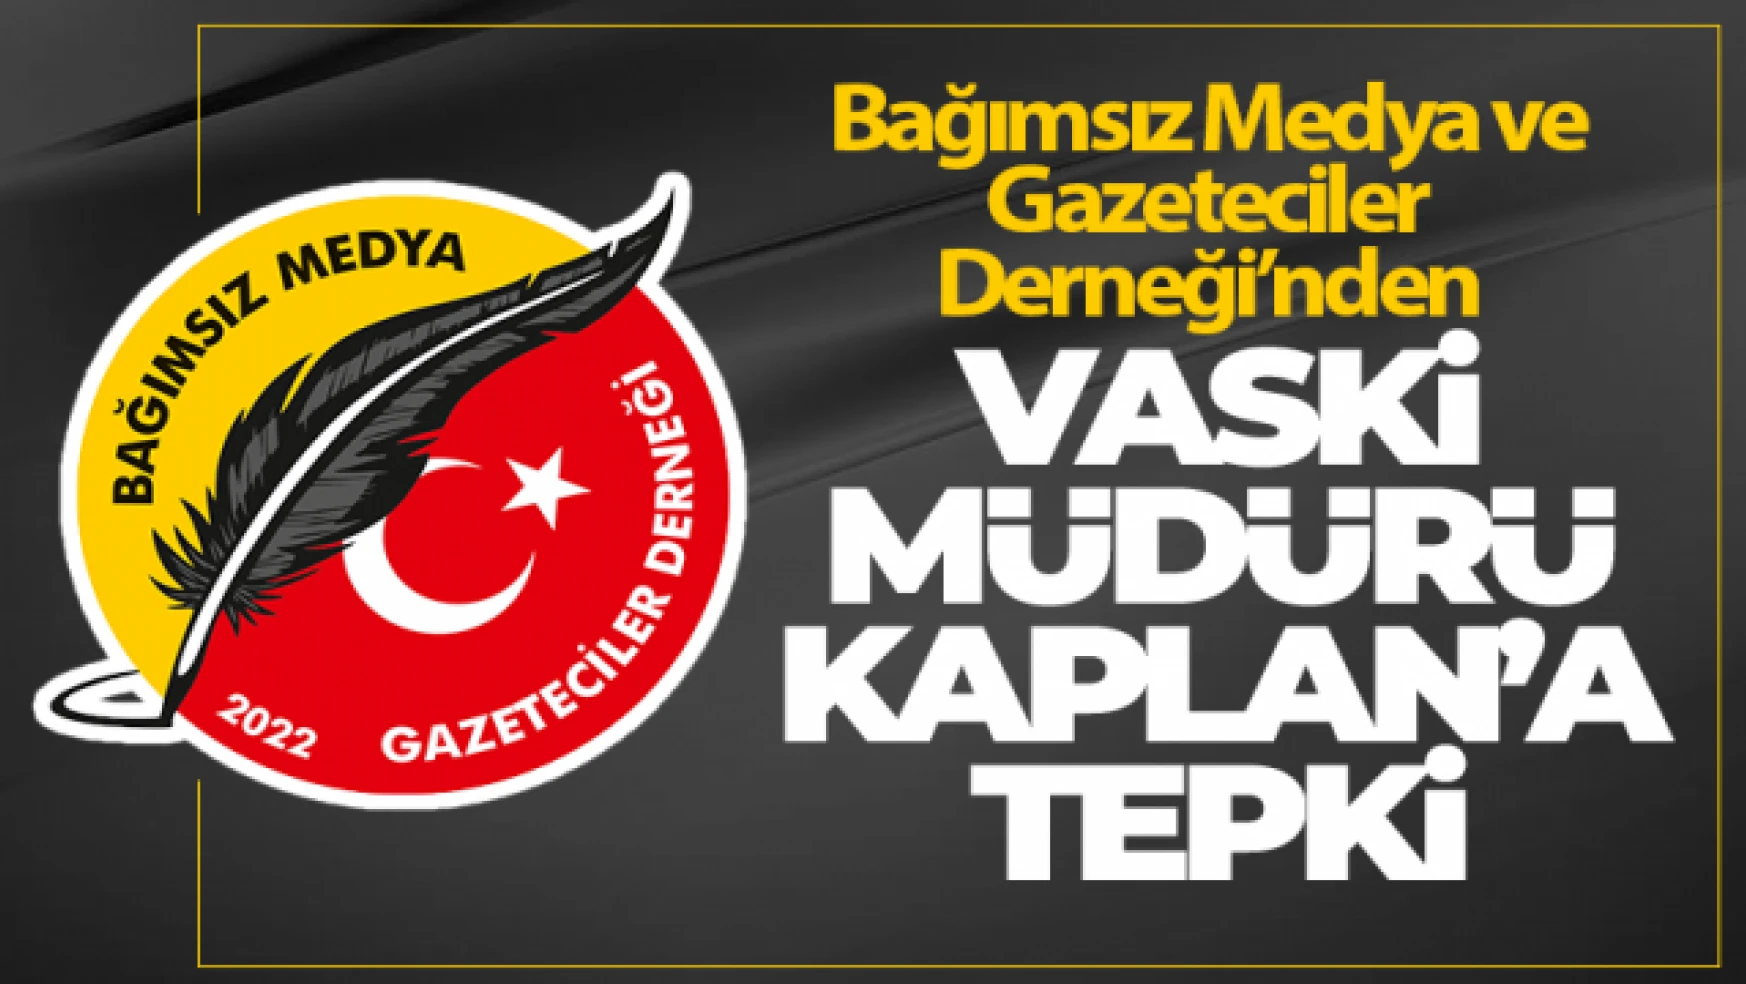 Bağımsız Medya ve Gazeteciler Derneği'nden VASKİ Müdürüne tepki!